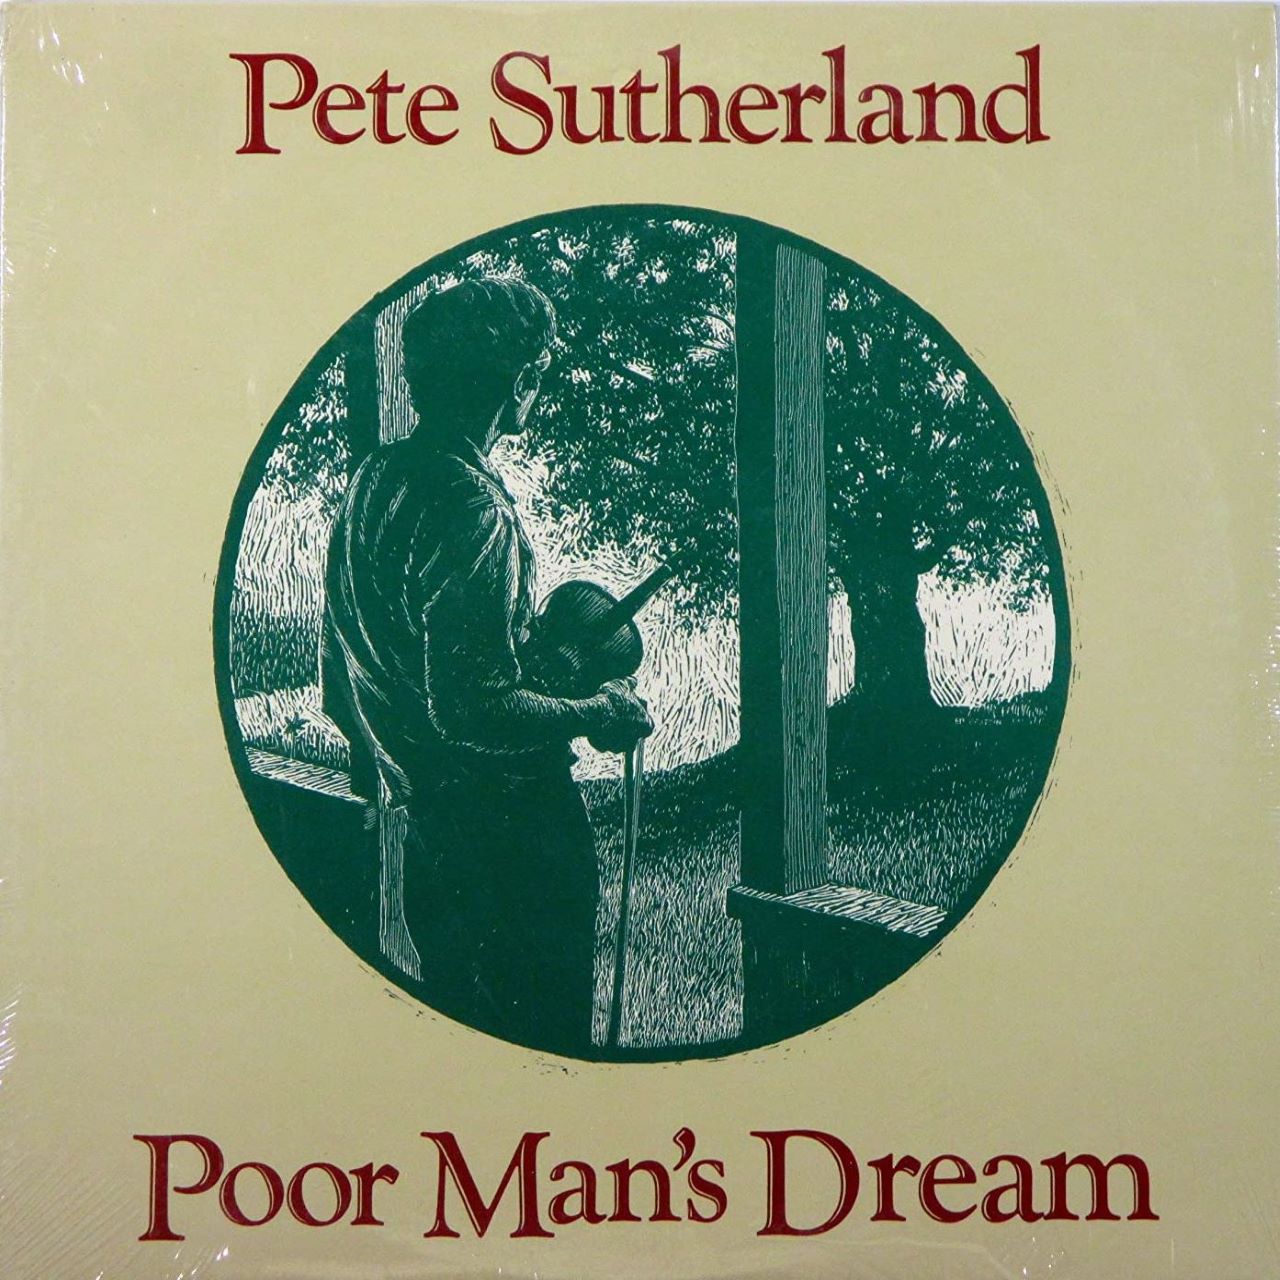 Pete Sutherland - Poor Man's Dream cover album